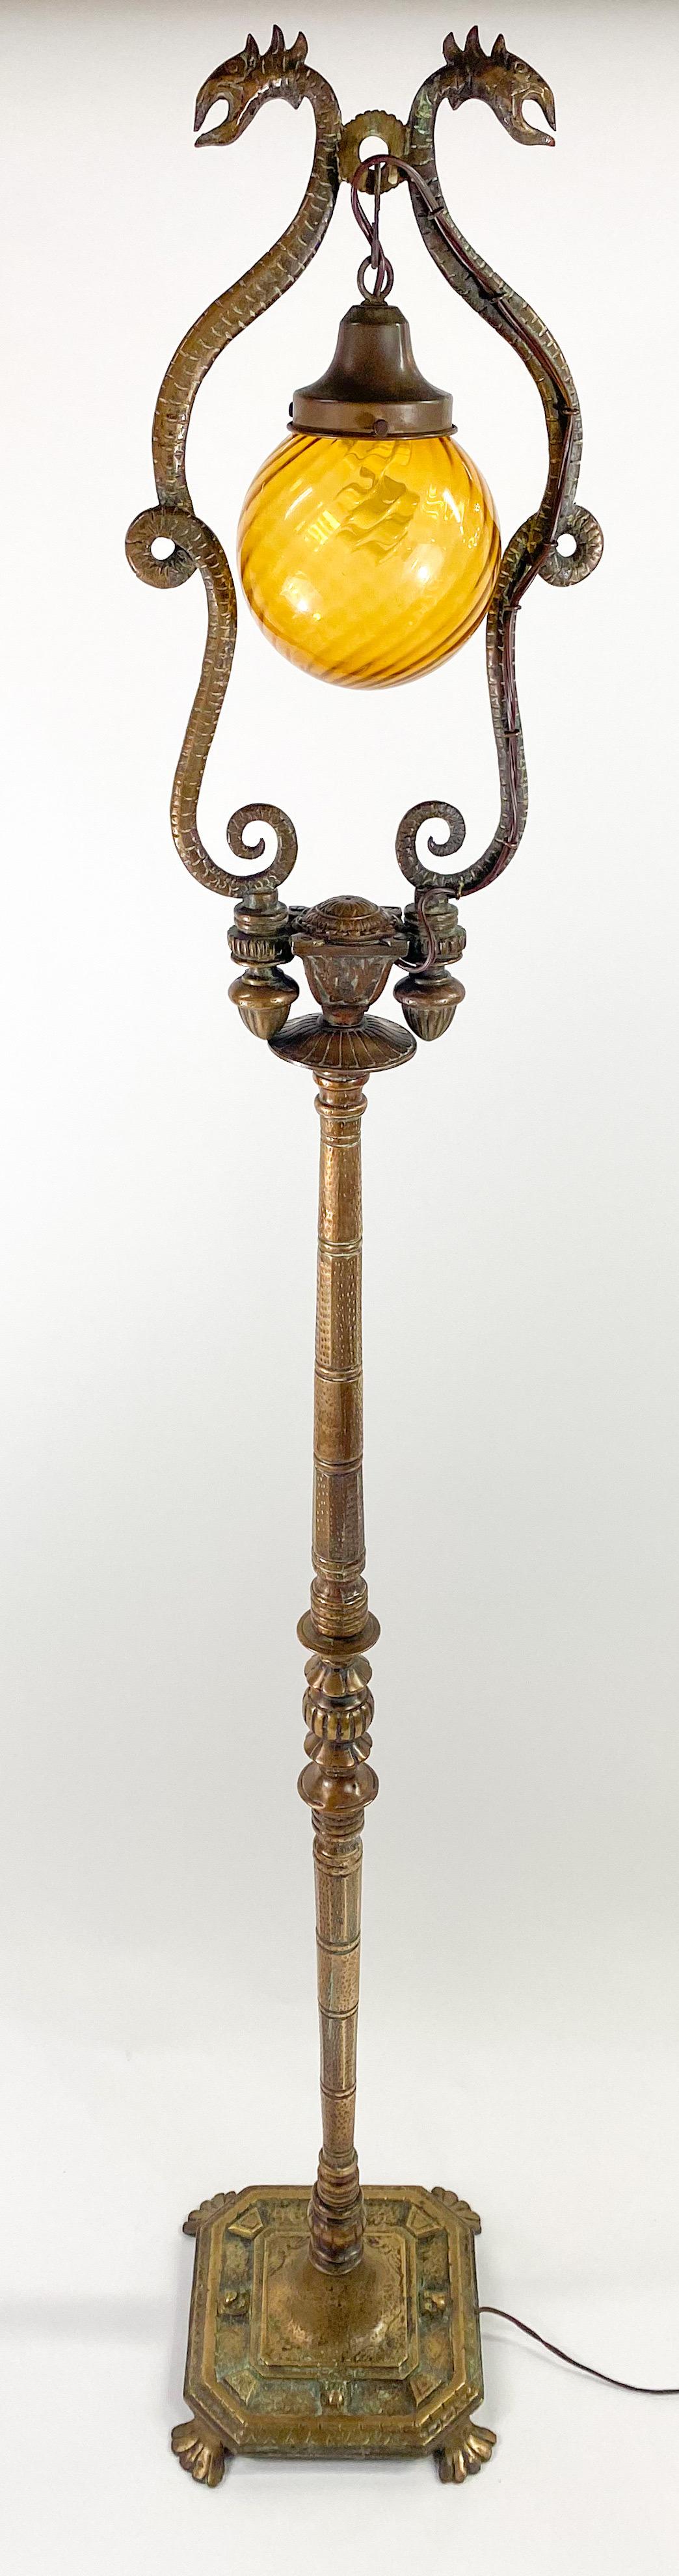 Exceptionnel lampadaire de la fin du 19e siècle, de style néo-rococo français rare, aux détails étonnants. Le lampadaire est fabriqué en bronze et présente une belle patine qui ajoute beauté et charme à son look. Posée sur une base carrée à quatre